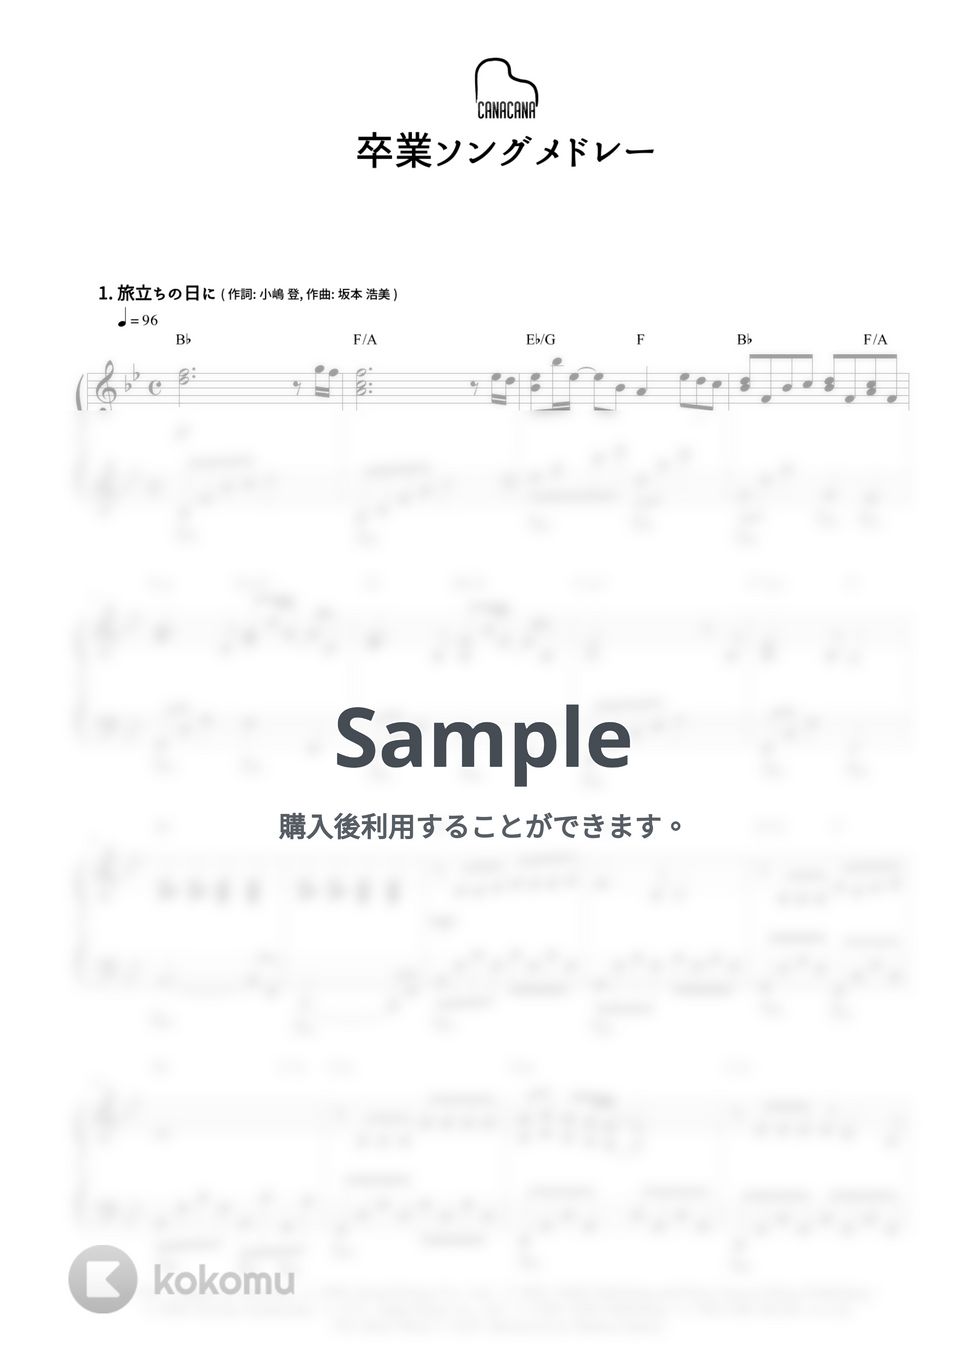 卒業ソング - 卒業ソング11曲メドレー by CANACANA family